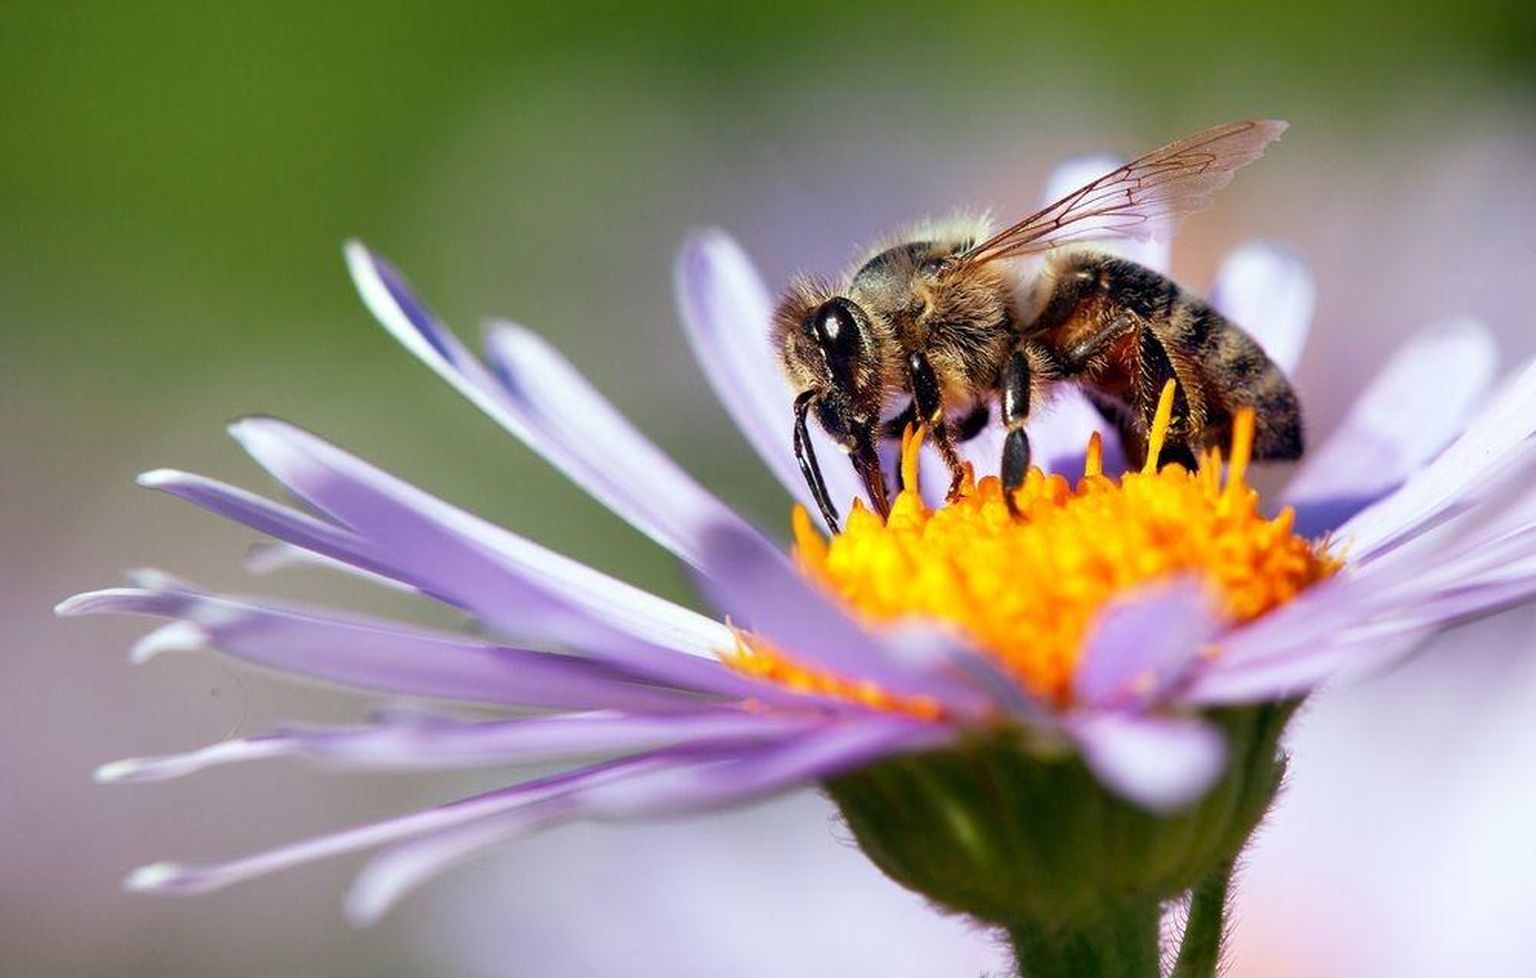 Mesilased on abilised vähiravis. FOTO: Shutterstock